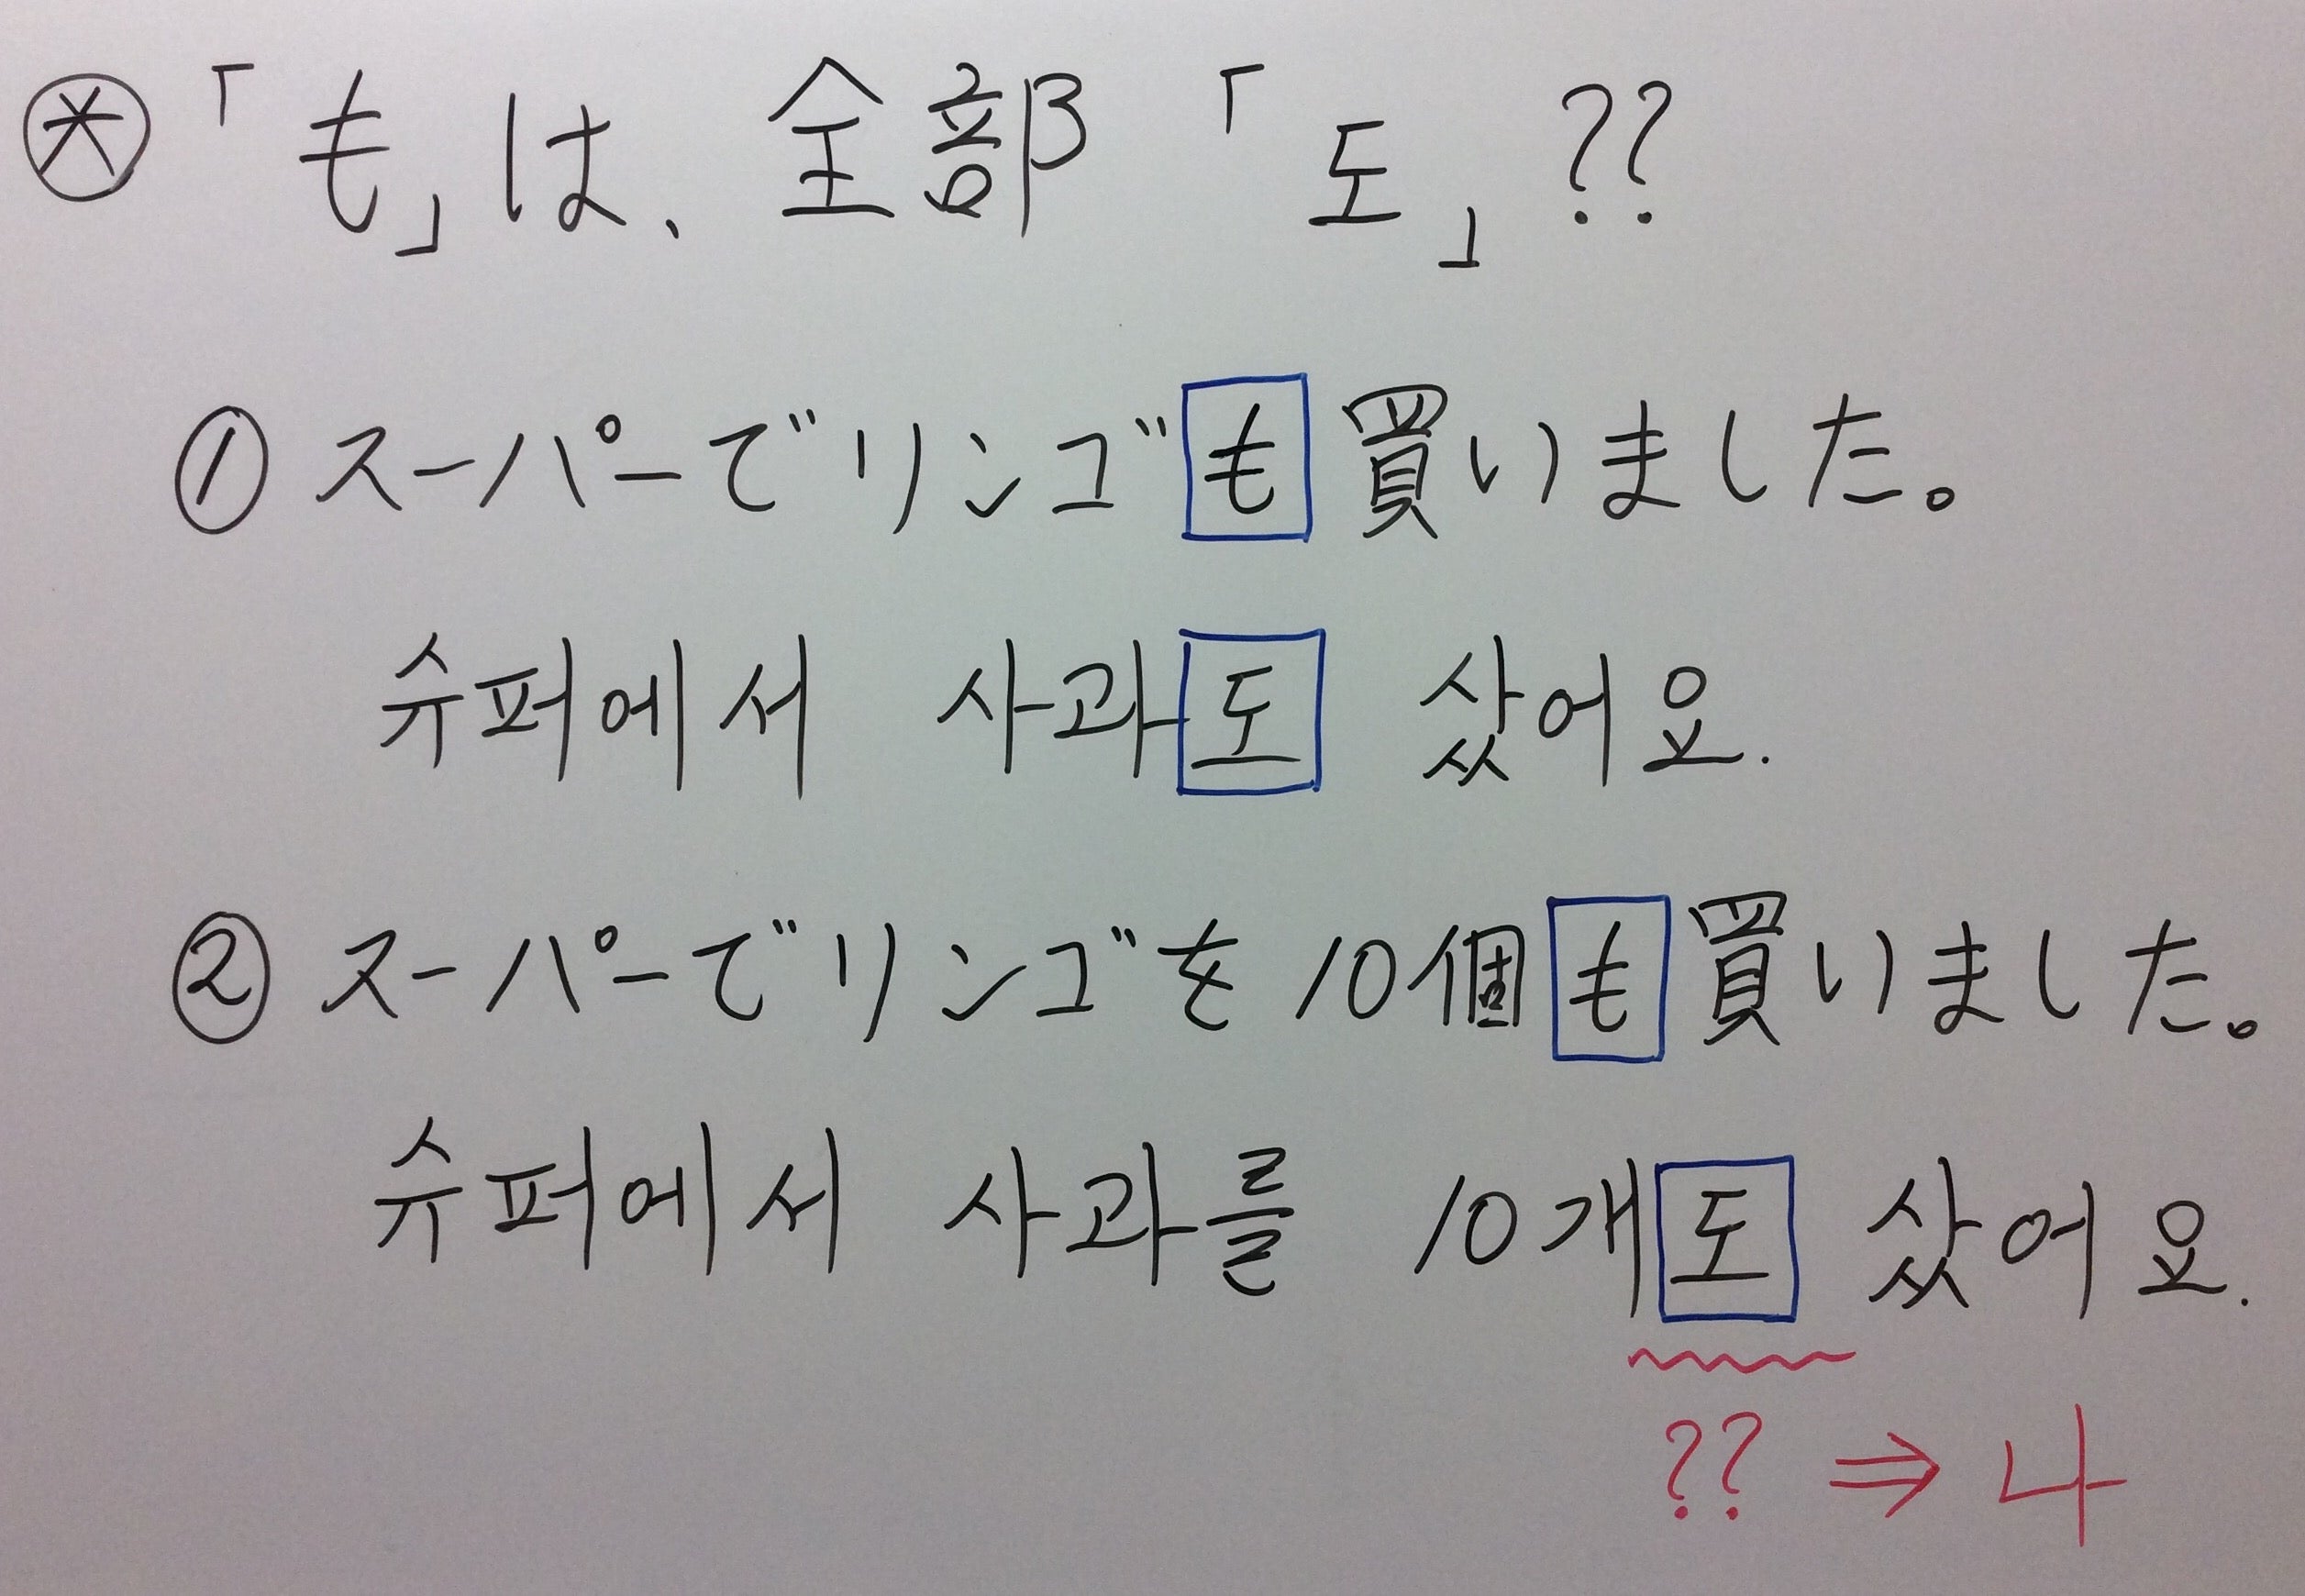 3 助詞 も は 韓国語で全部 도 ハングルの森とマルマダンの韓国語な毎日